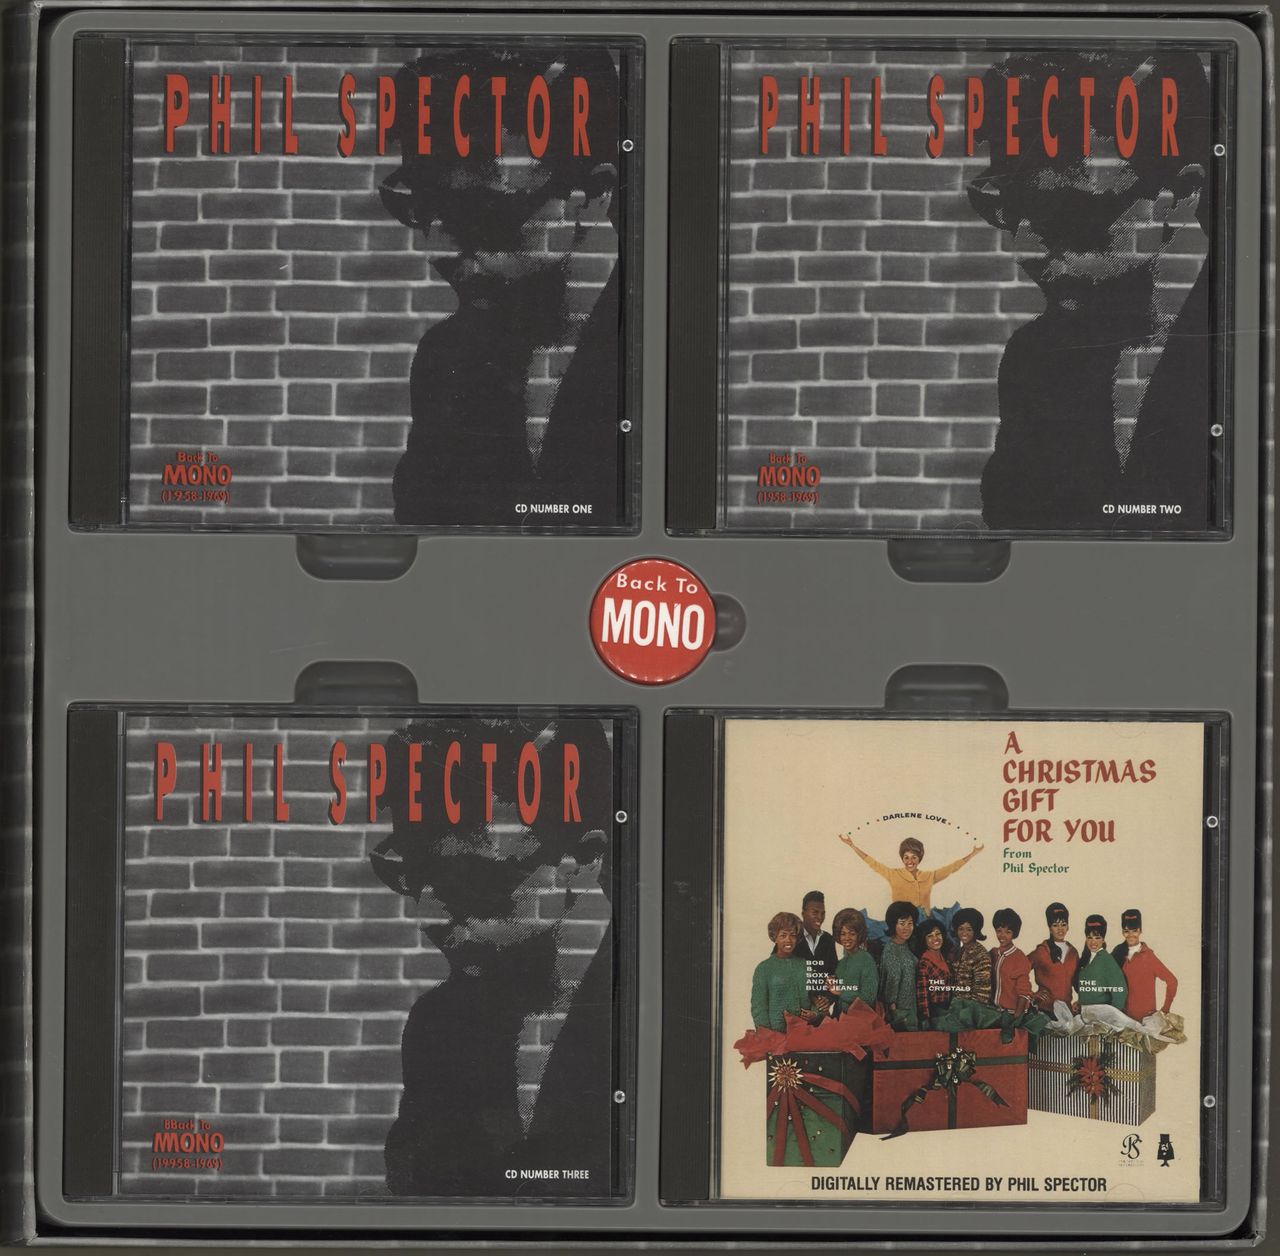 Phil Spector Back To Mono 1958-1969 US Cd album box set — RareVinyl.com